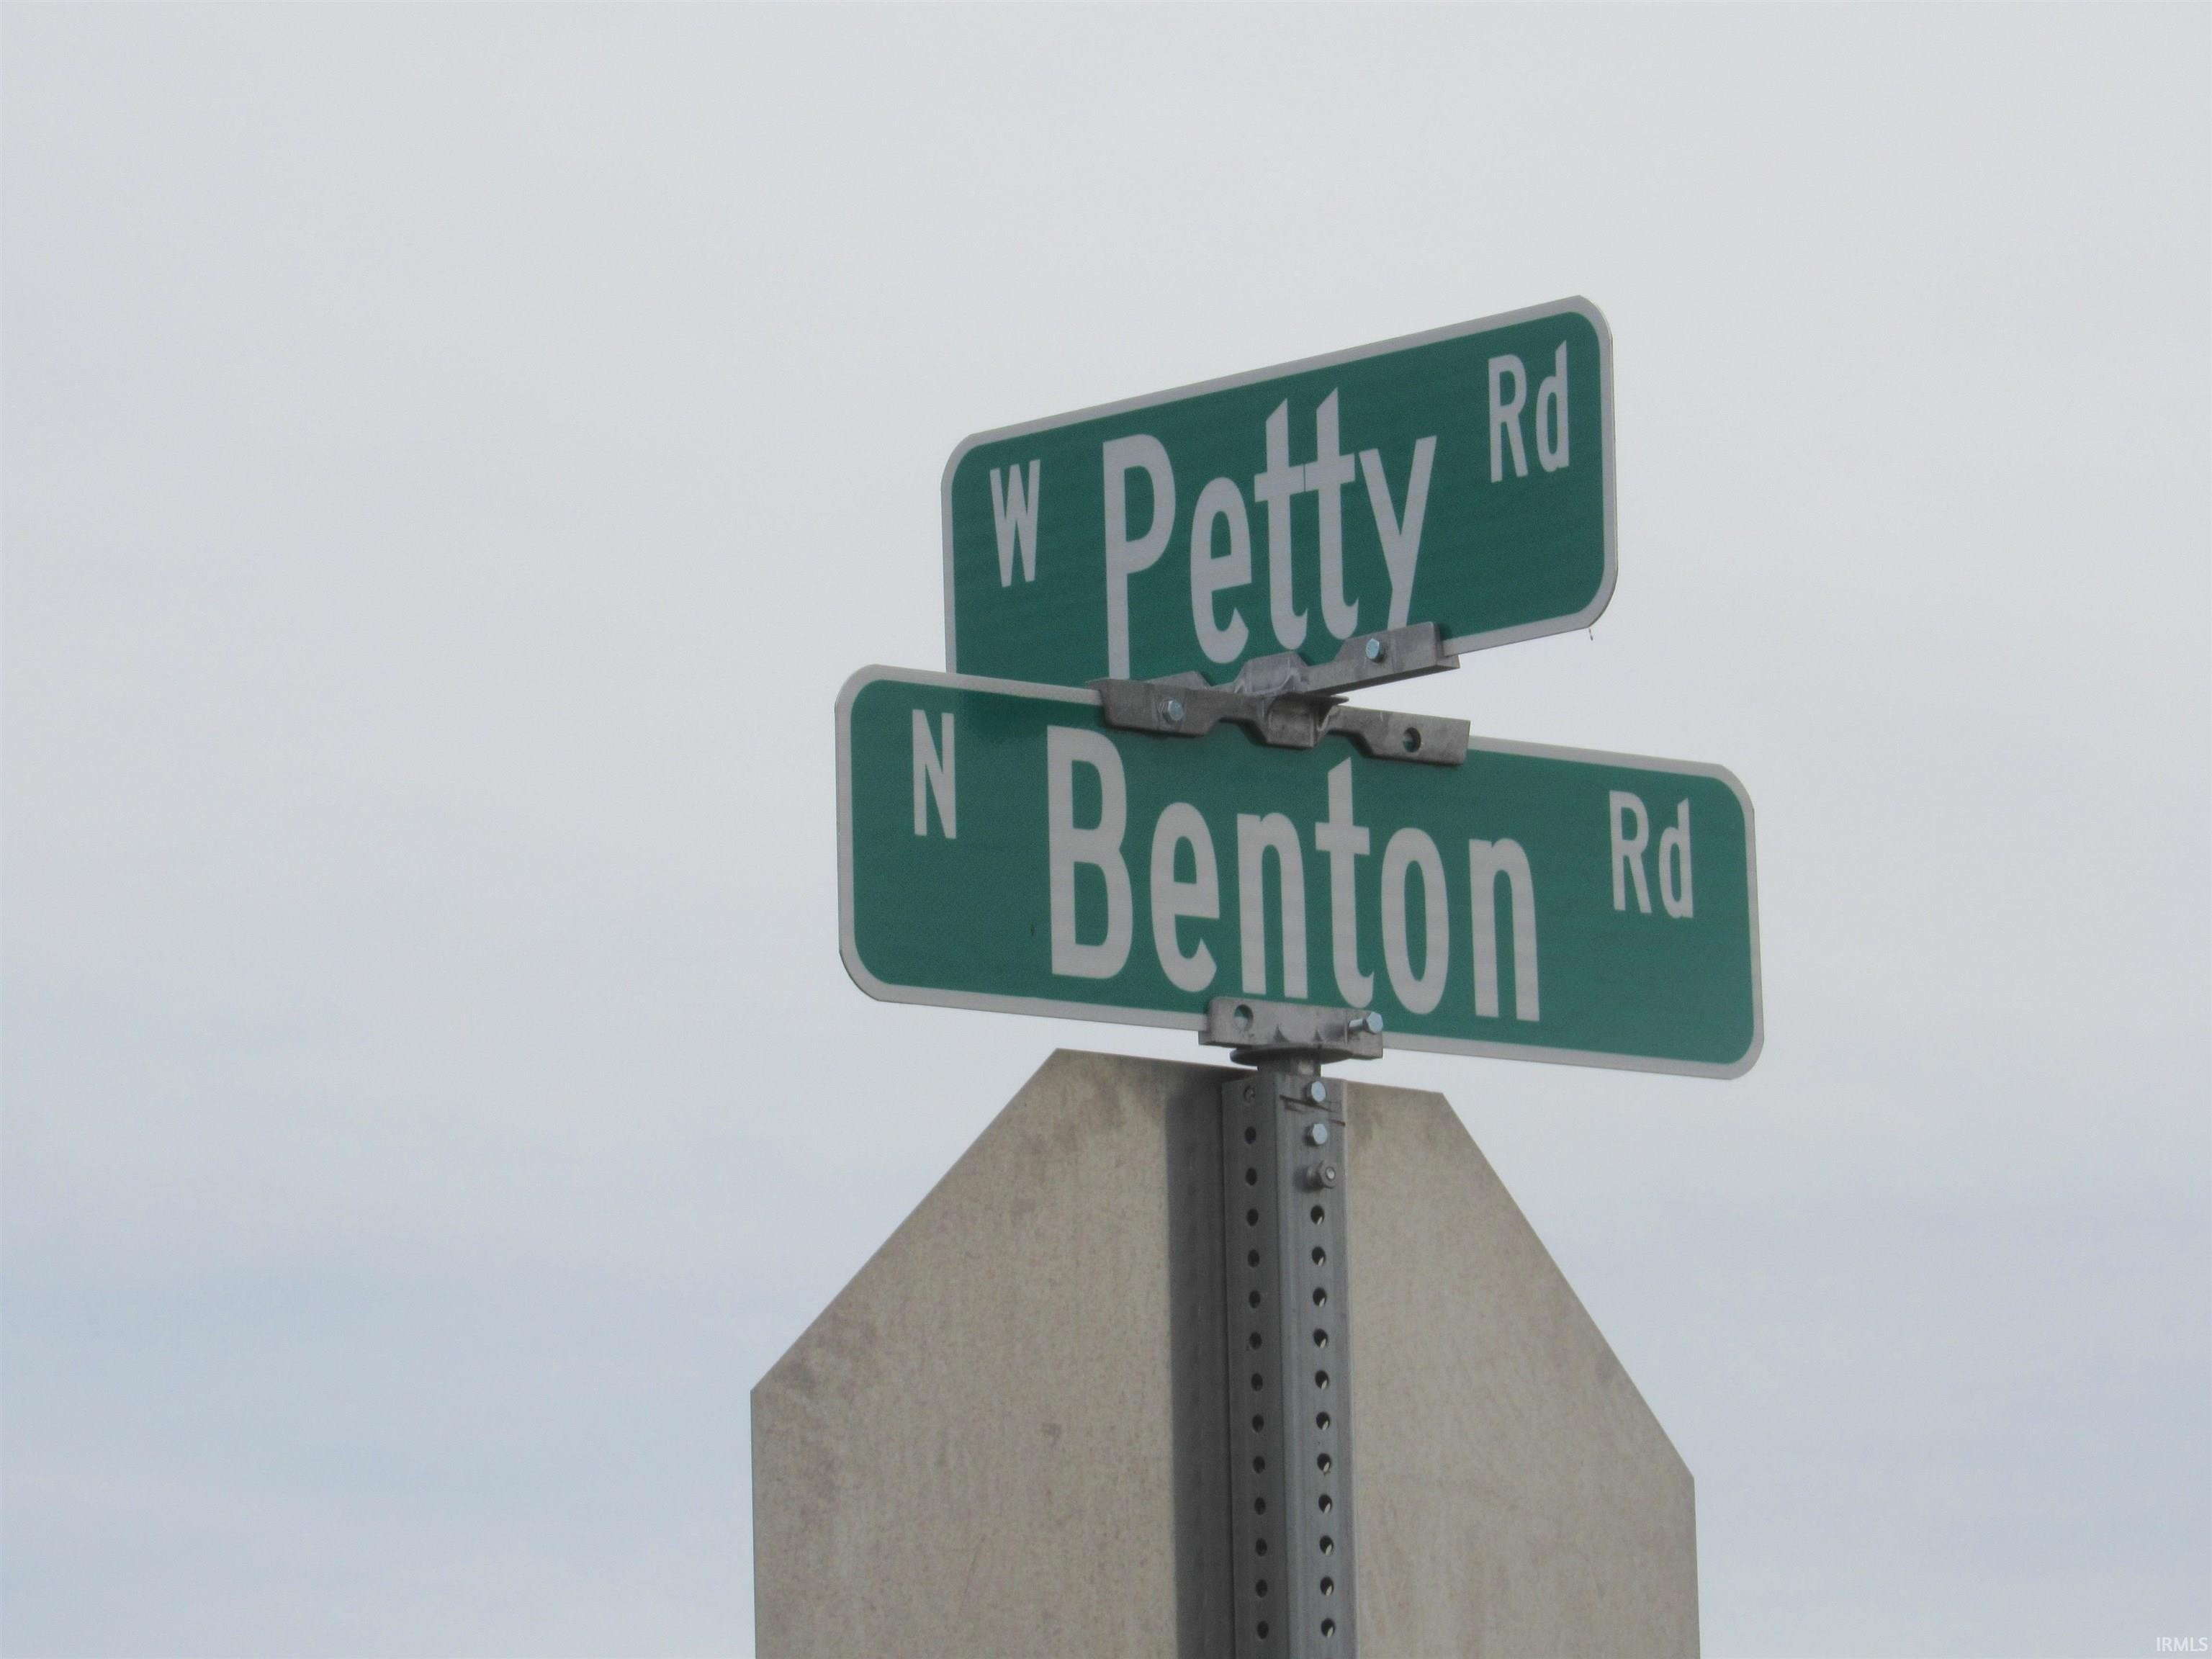 11. 2109 N Benton Road